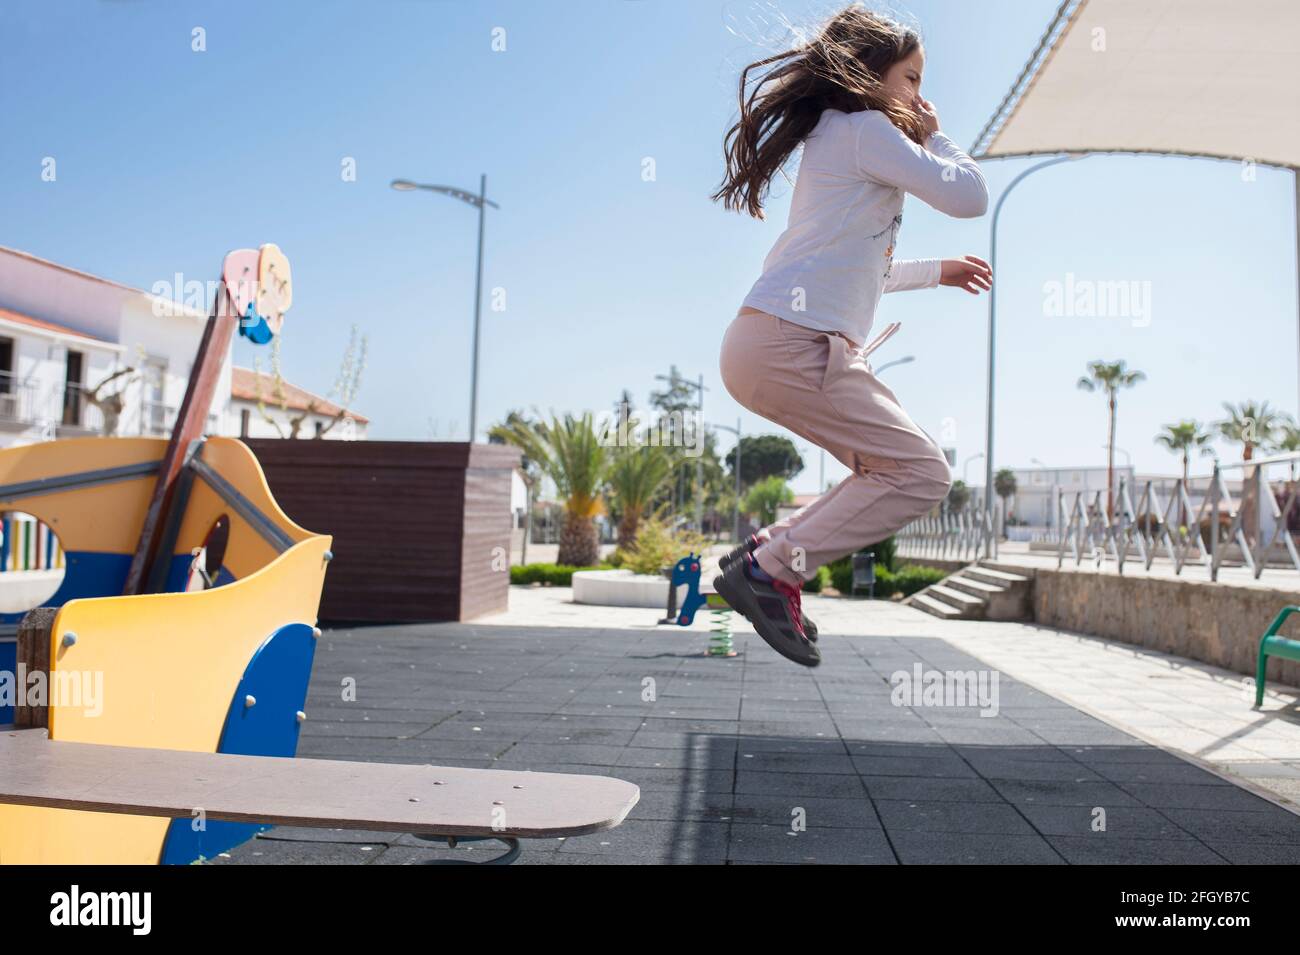 Enfant fille sautant de la marche la planche du bateau pirate de terrain de jeu. Vitalité et imagination concept pour les enfants Banque D'Images